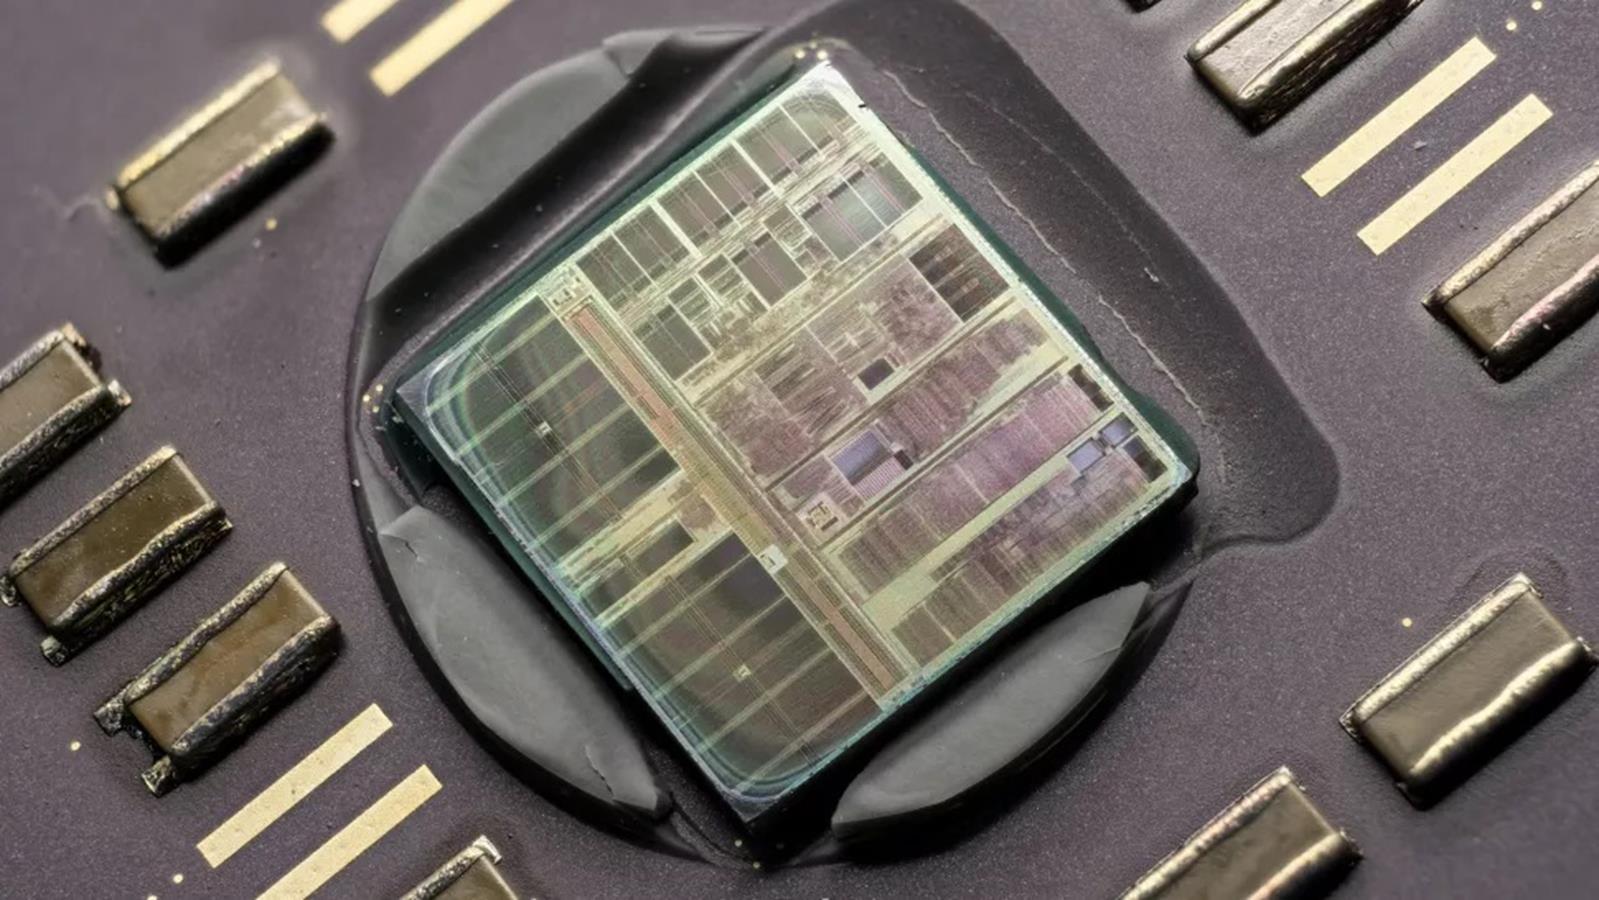 Pamiętacie procesor AMD K6-2+? Po 22 latach odblokowano jego dodatkową pamięć L2